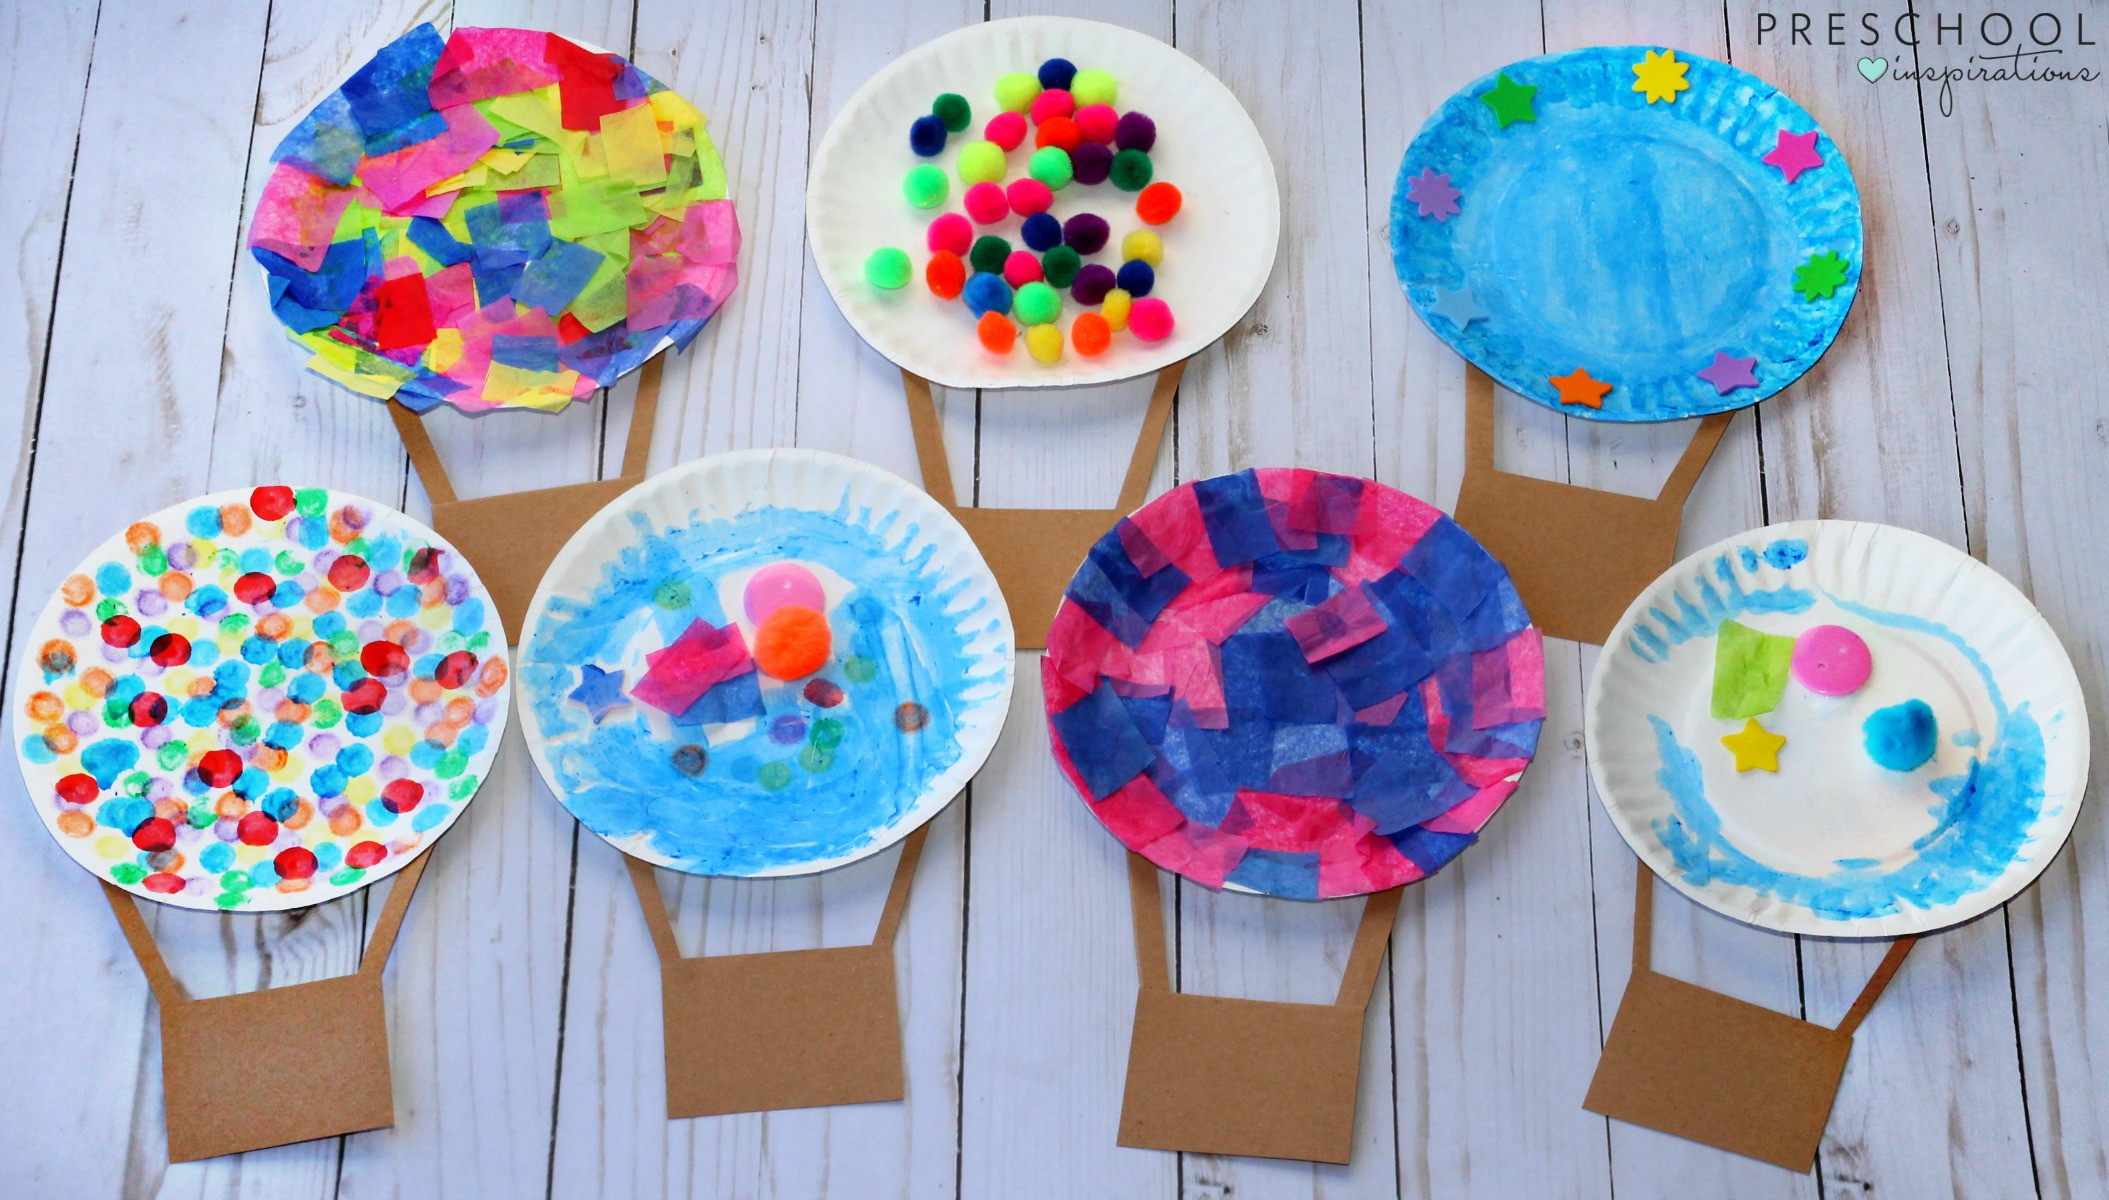 Art Ideas For Preschoolers
 Hot Air Balloon Art Activity Preschool Inspirations